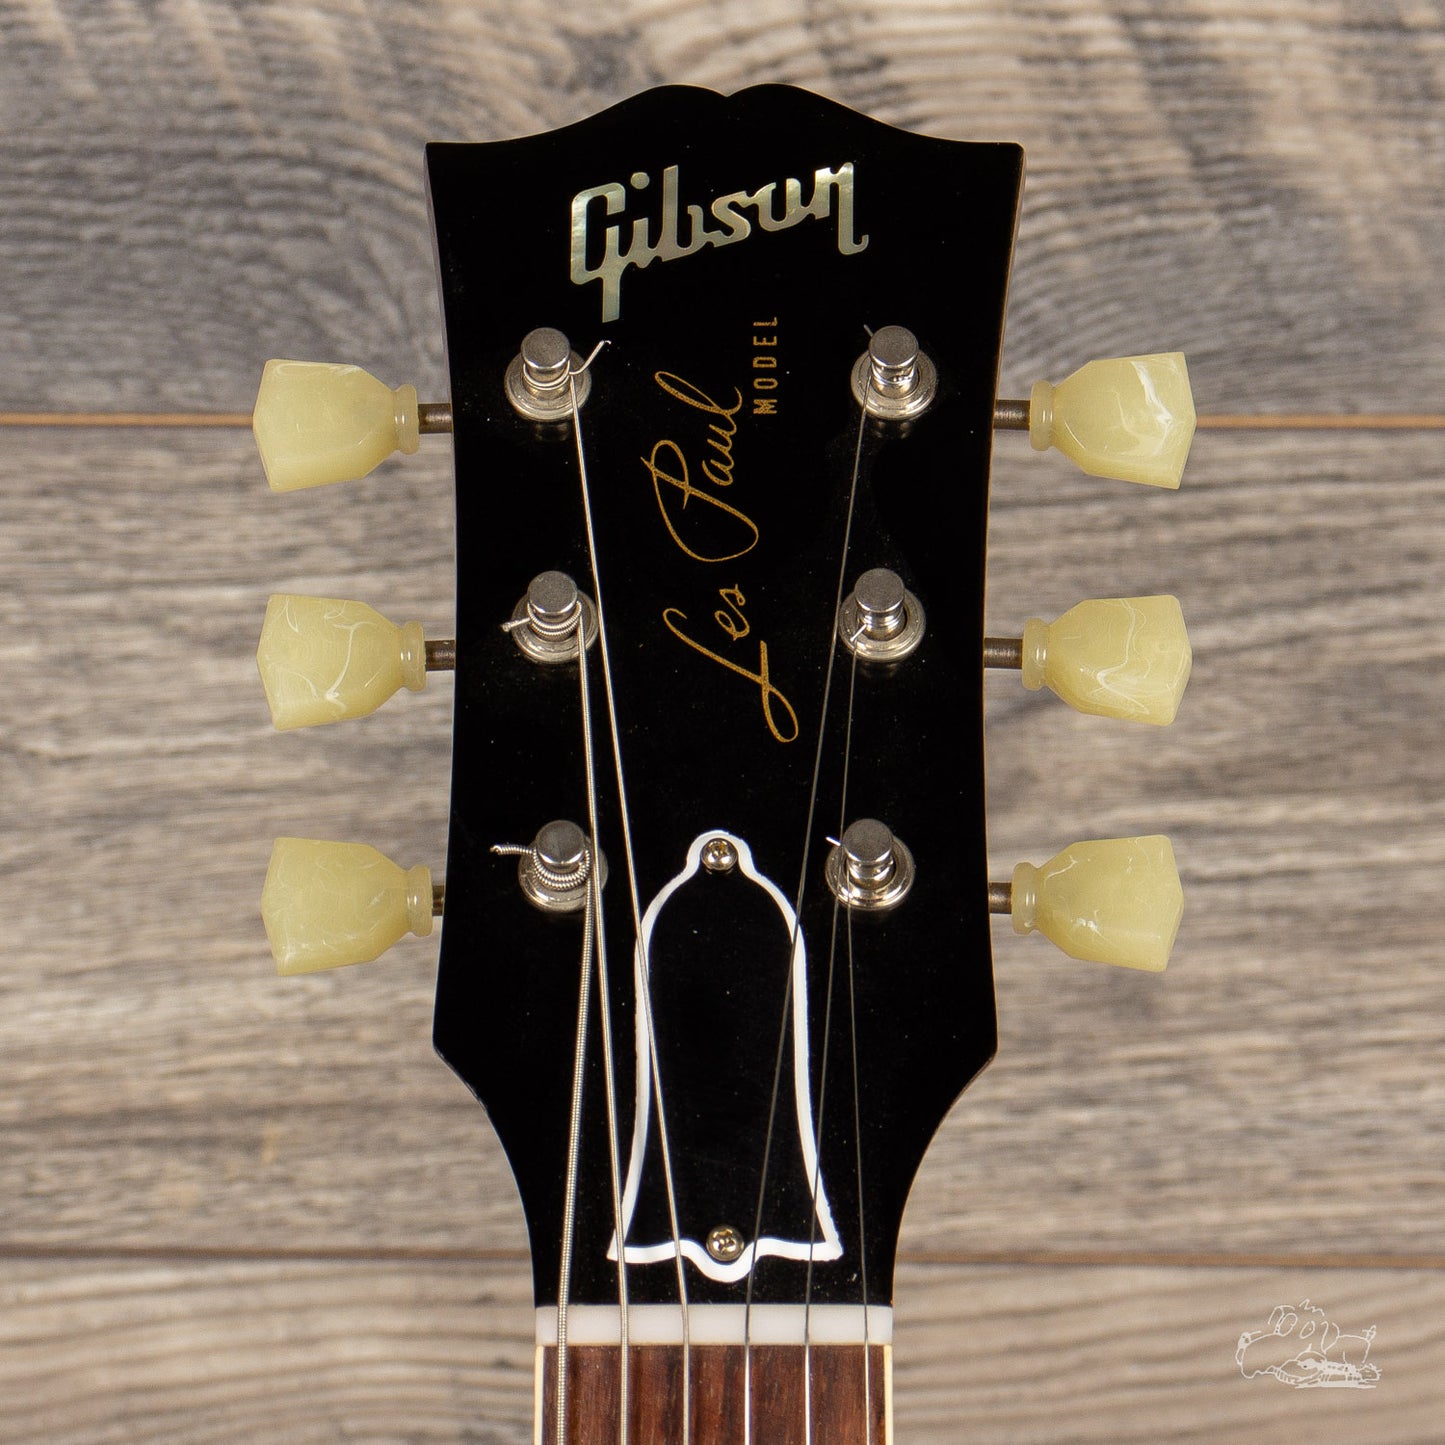 2014 Gibson Custom Shop R7 VOS Les Paul - Gold Top, 8 lbs.4 oz.